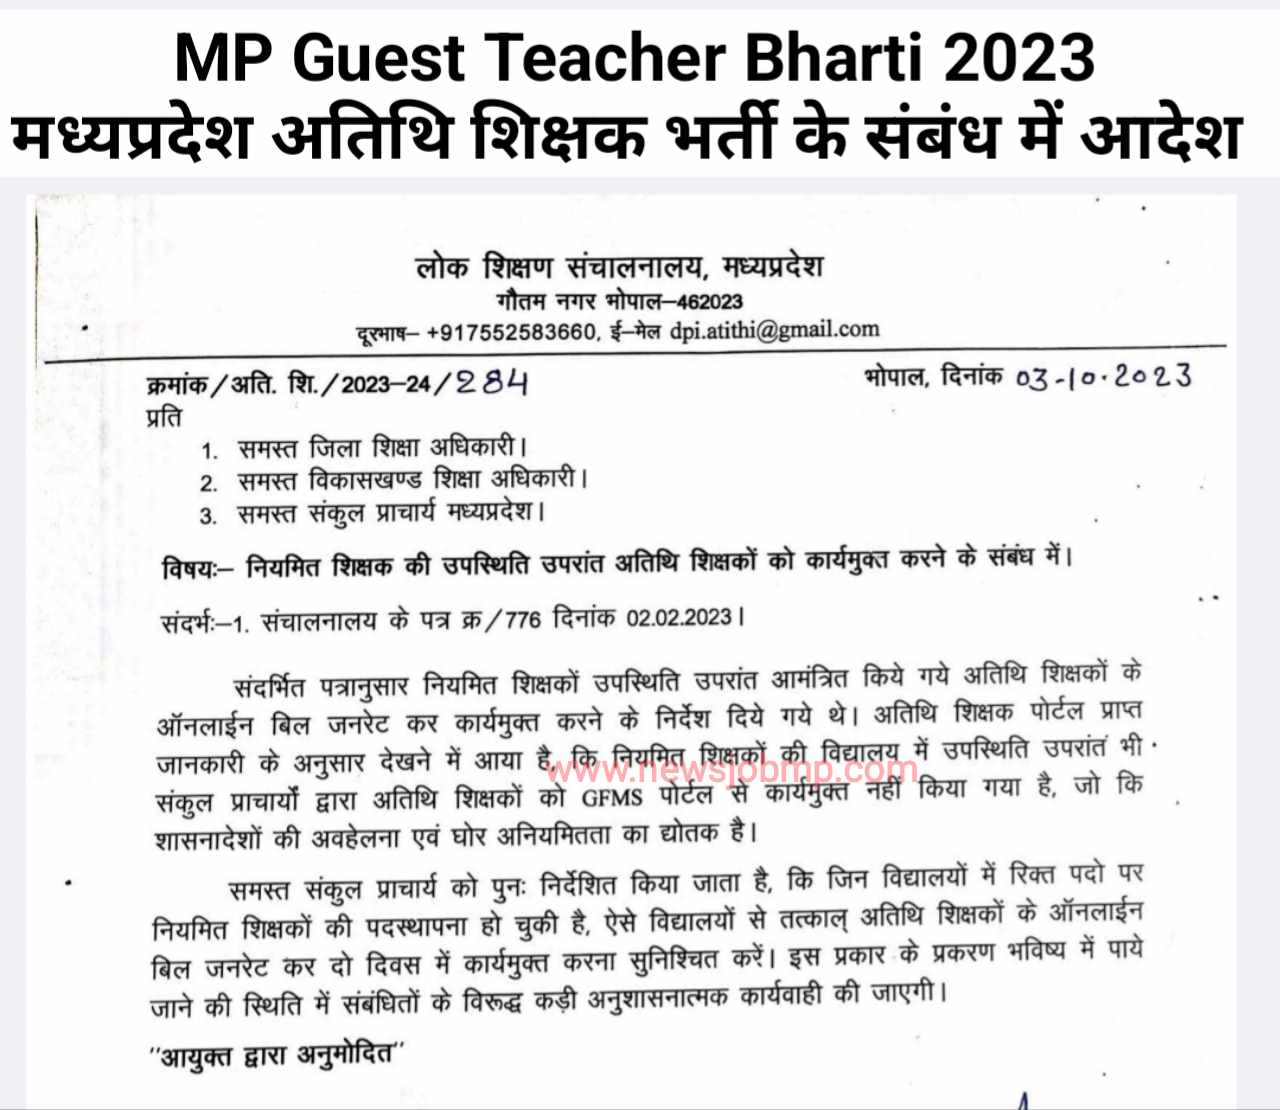 मध्यप्रदेश अतिथि शिक्षकों को दो दिवस में कार्यमुक्त करने के संबंध नवीन आदेश जारी,MP Guest Teacher Bharti 2023, MP Atithi Teacher Bharti 2023,MP Atithi Shikshak Bharti 2023